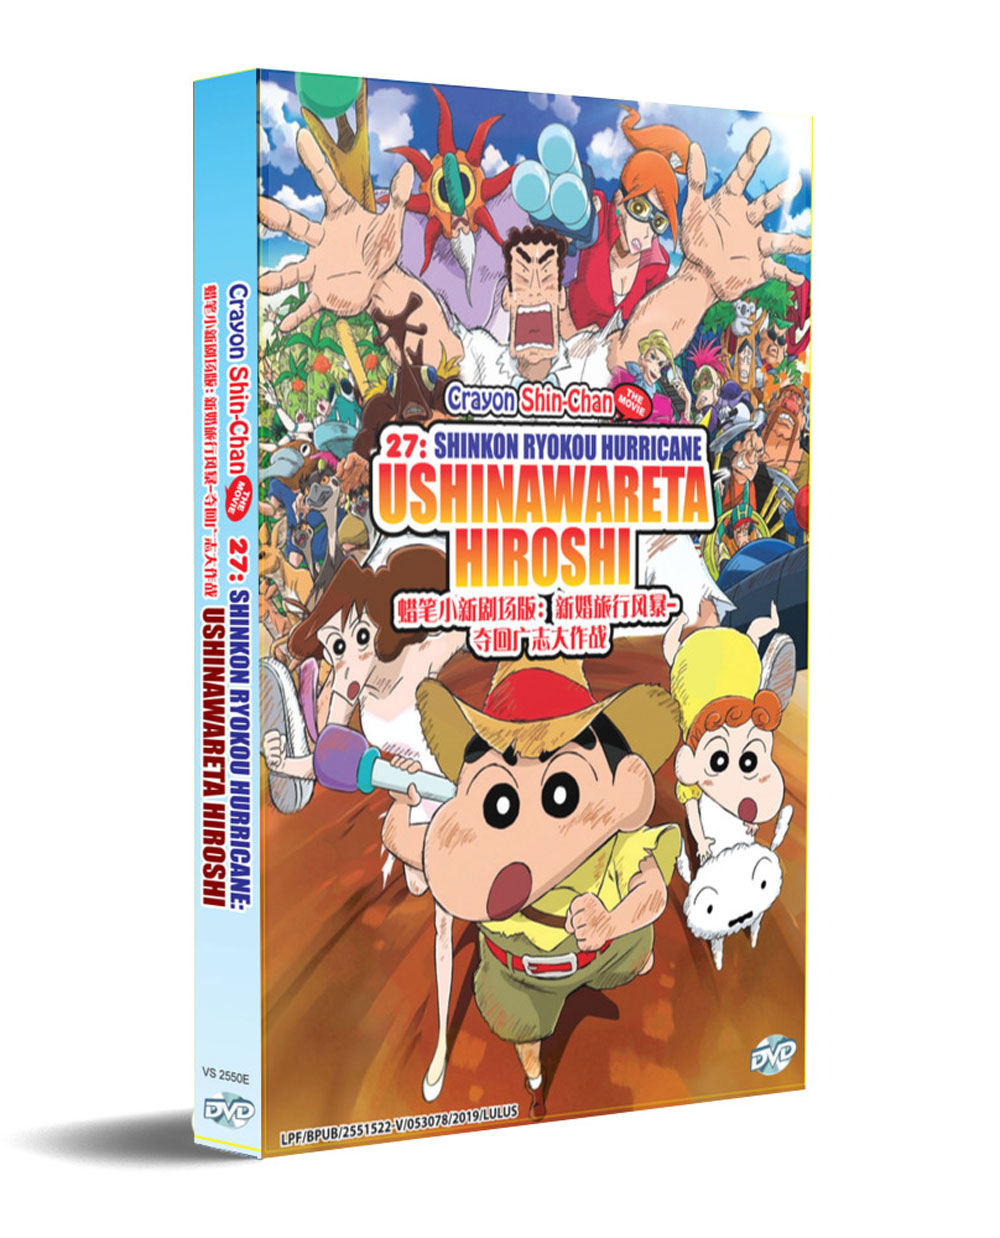 Crayon Shin-chan The Movie 27: Shinkon Ryokou Hurricane - Ushinawareta Hiroshi (DVD) (2019) Anime